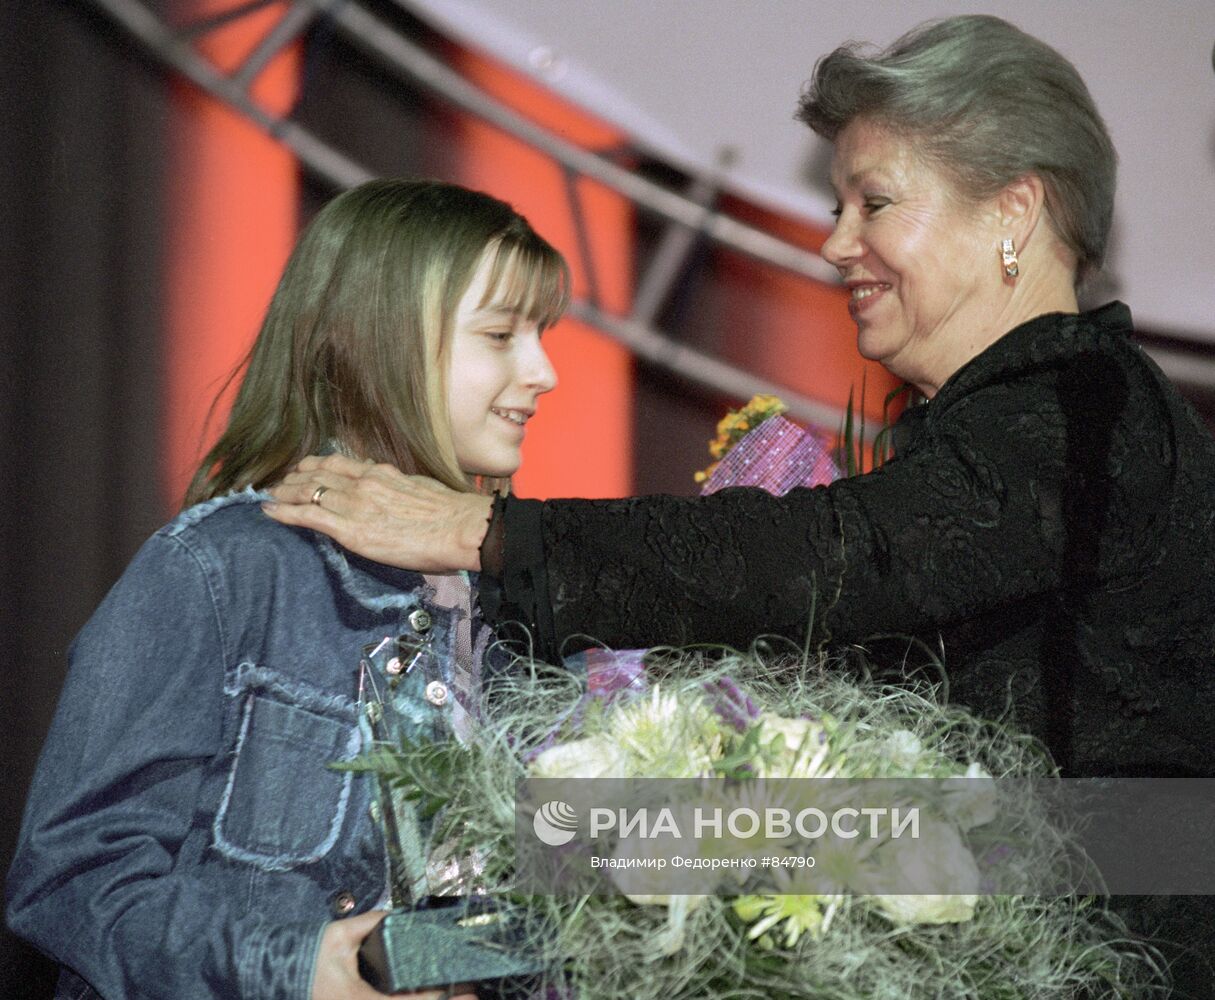 Гимнастка Лариса Латынина поздравляет юную гимнастку Анну Павлову